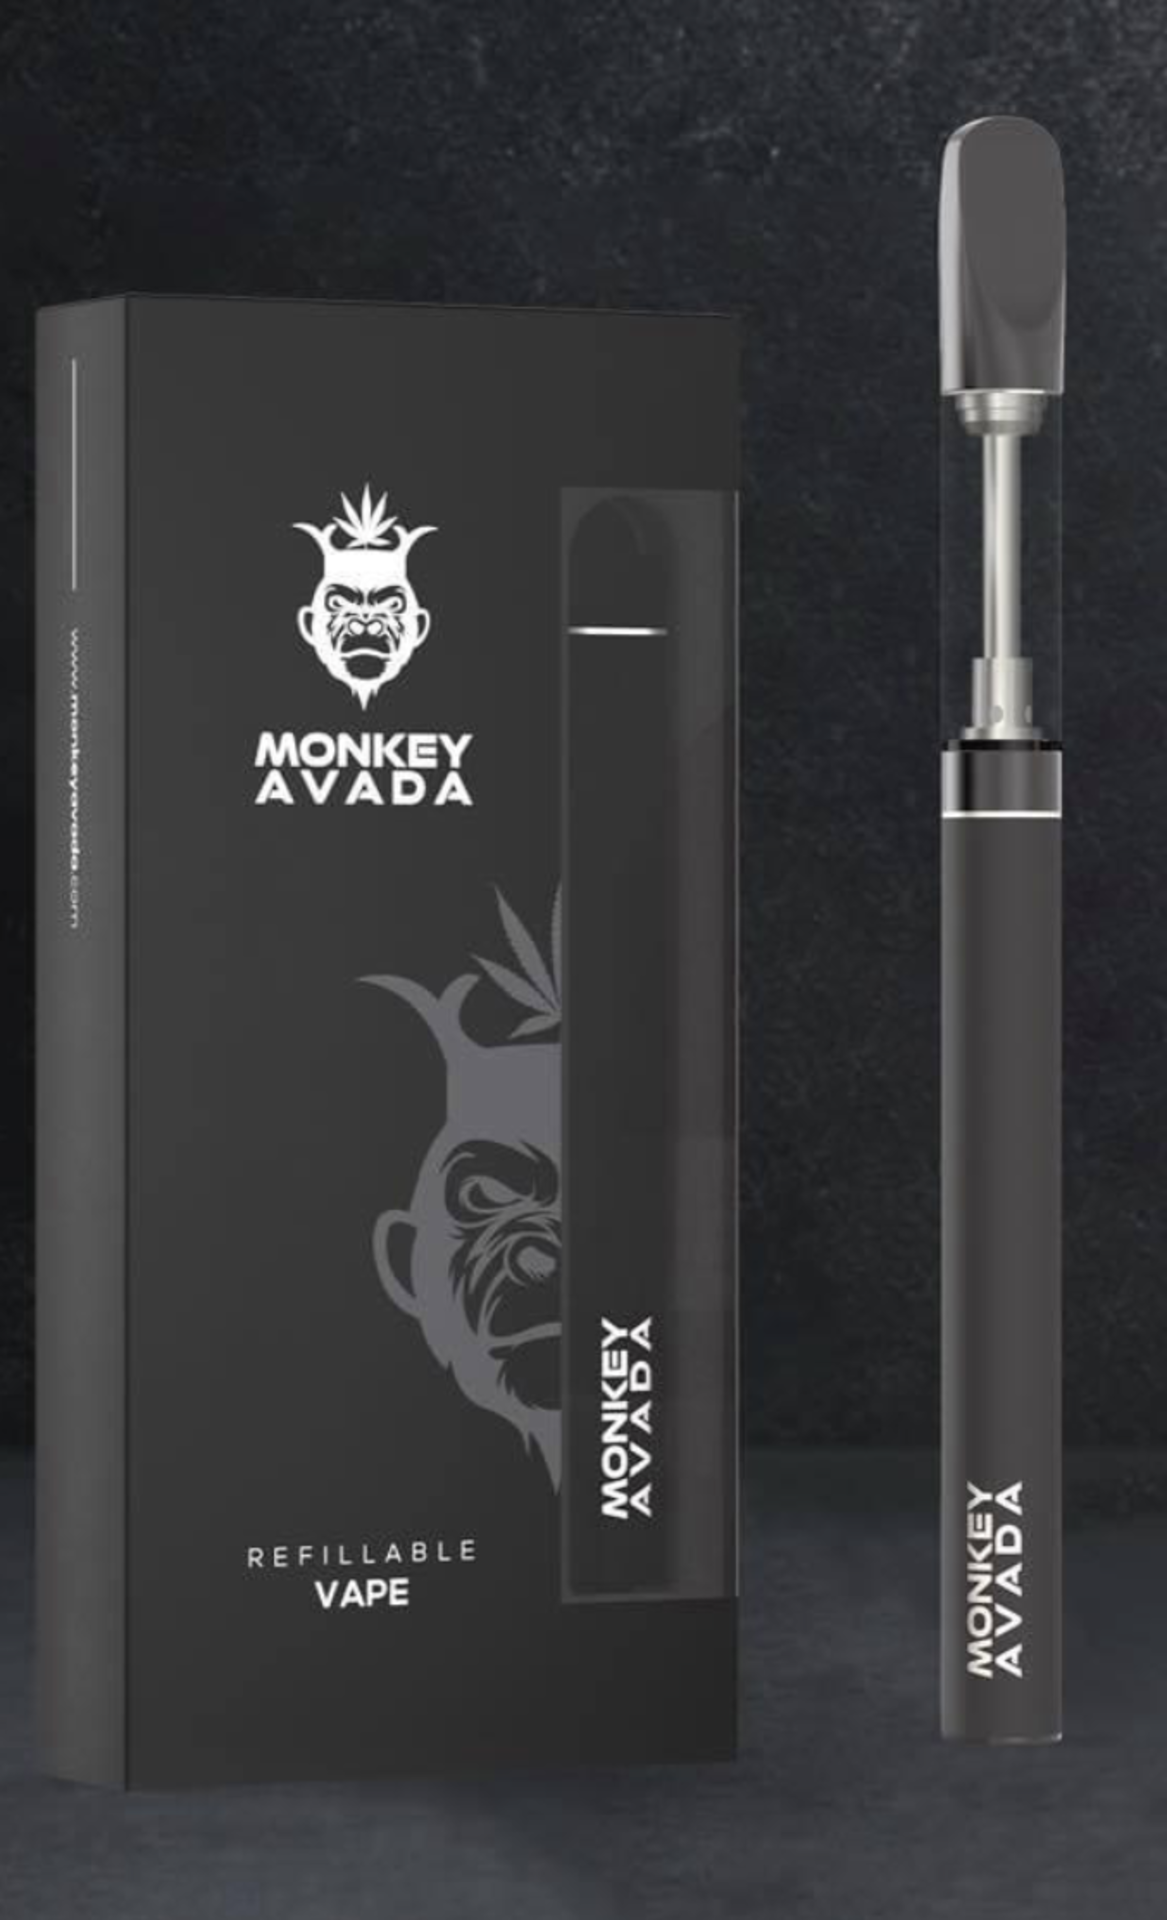 10 x Monkey Avada Refillable Vape Pen Kits | RRP £19.99 each